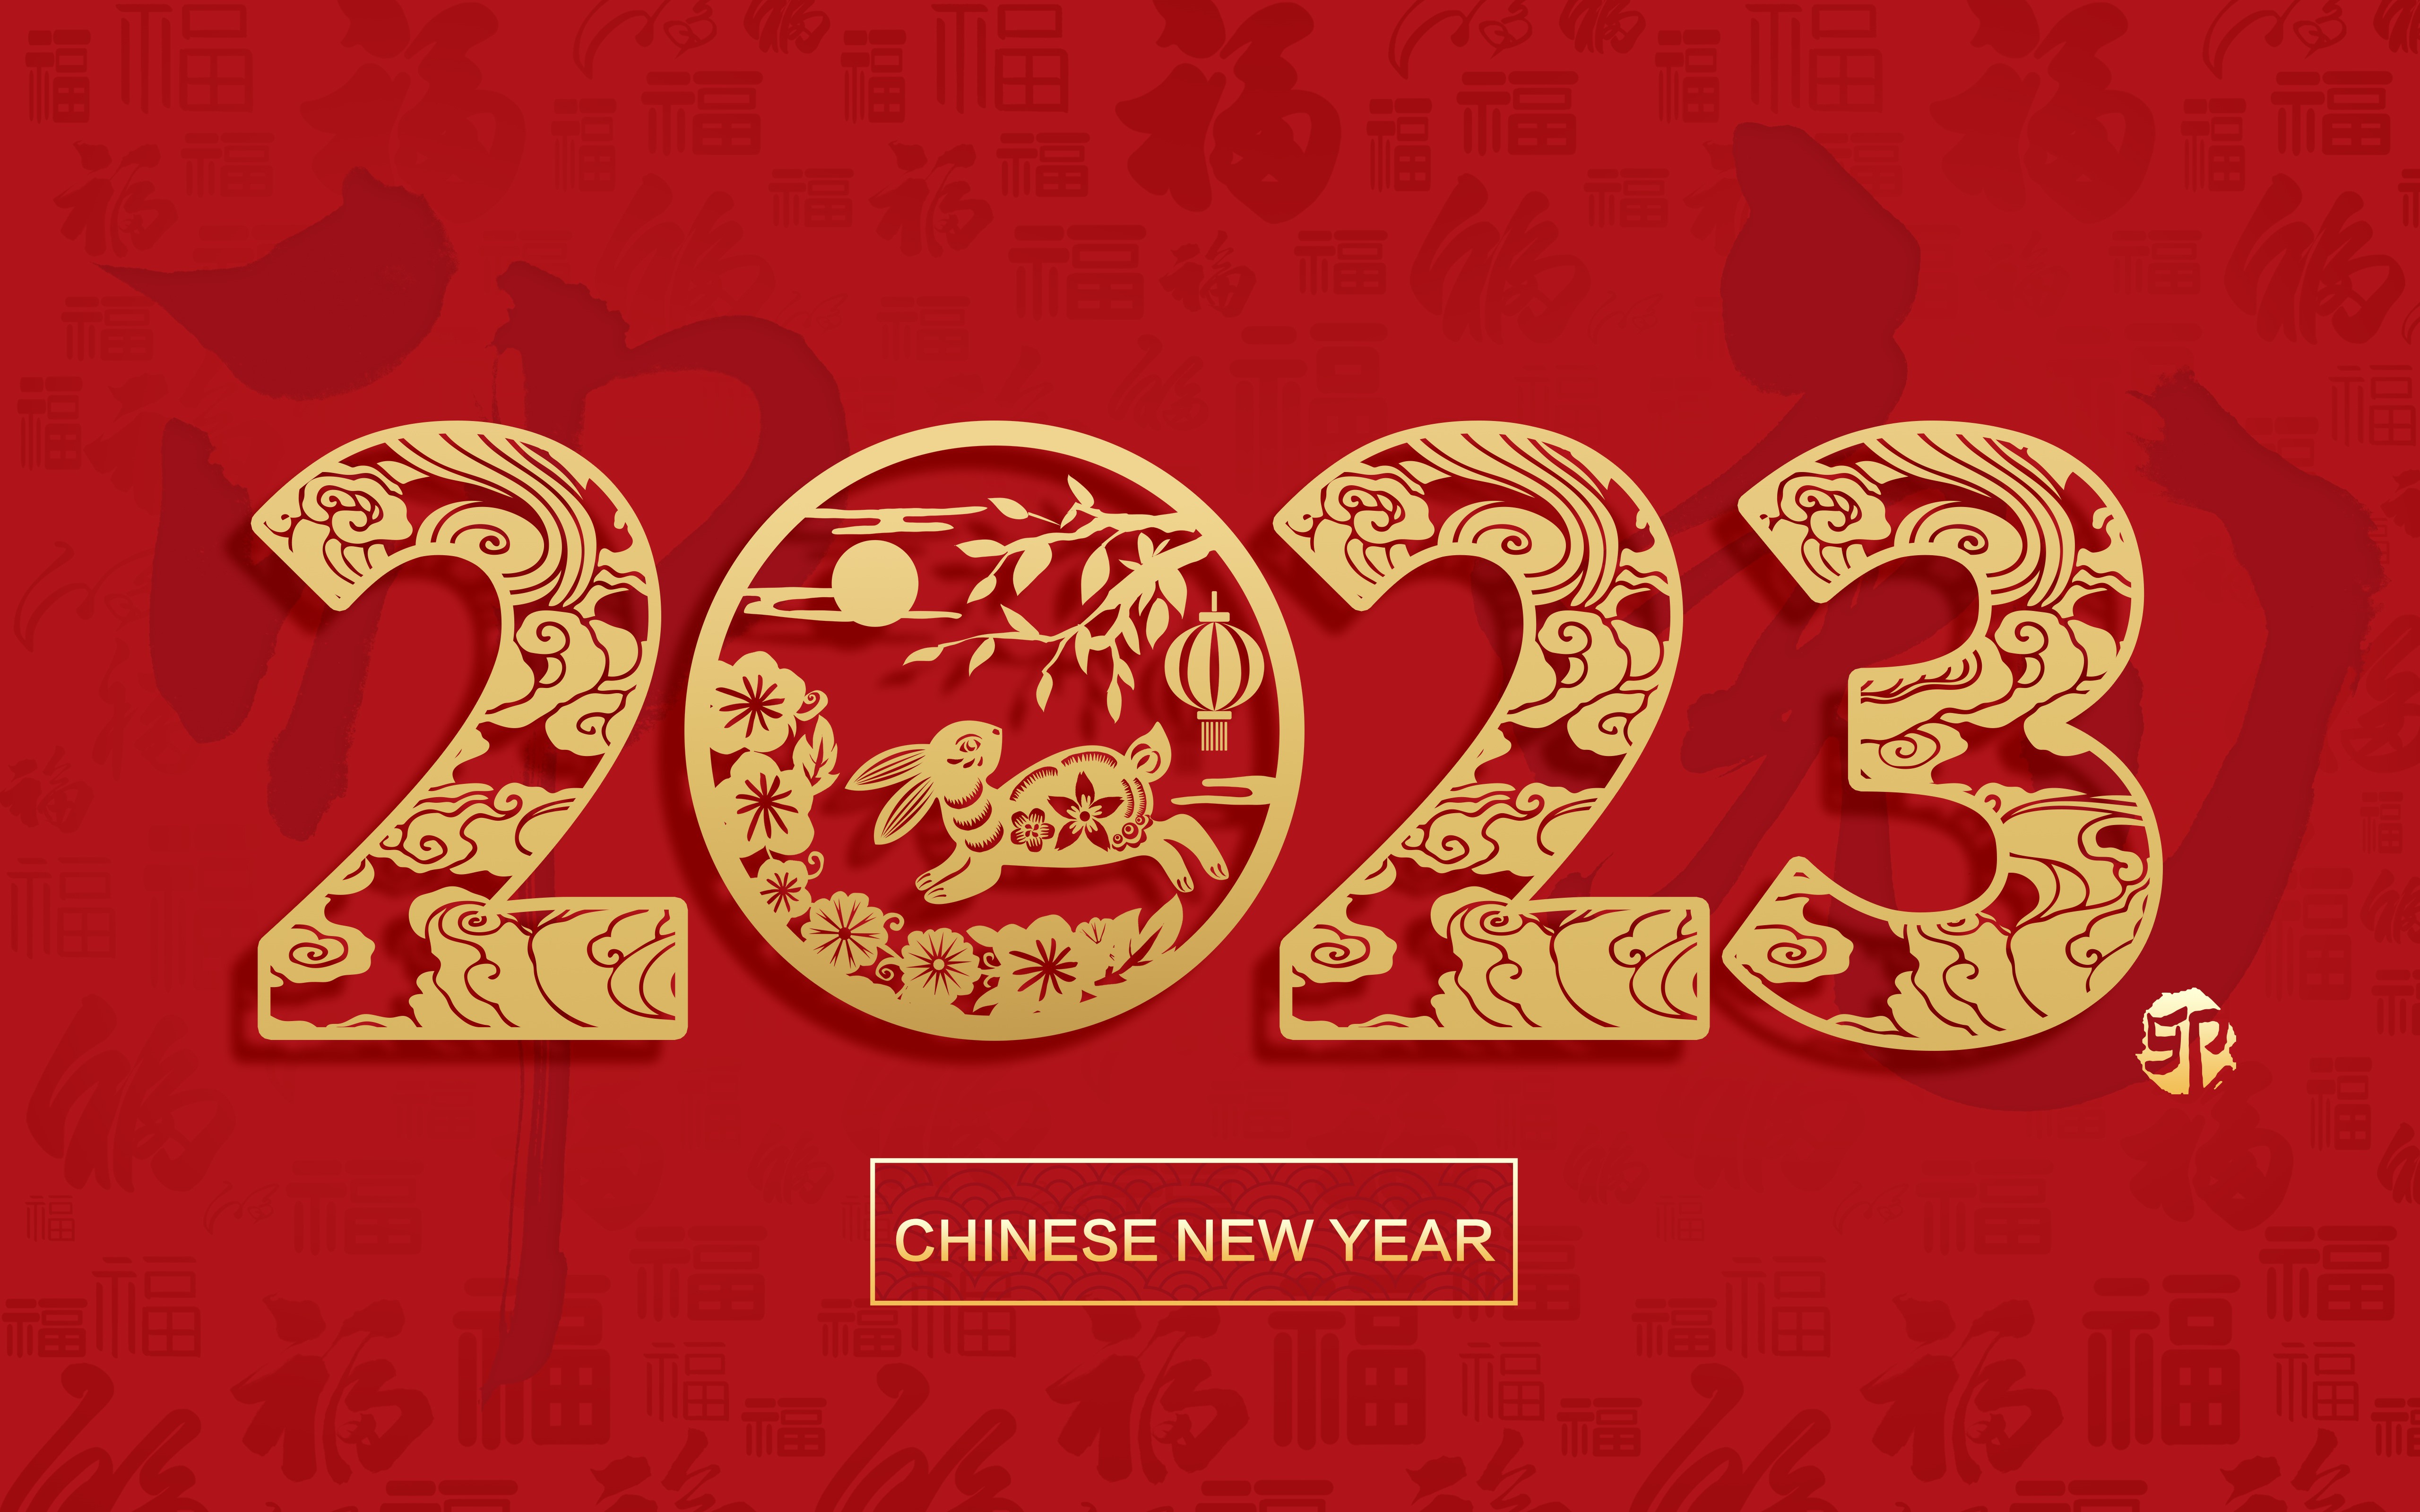 пабг китайский новый год фото 28